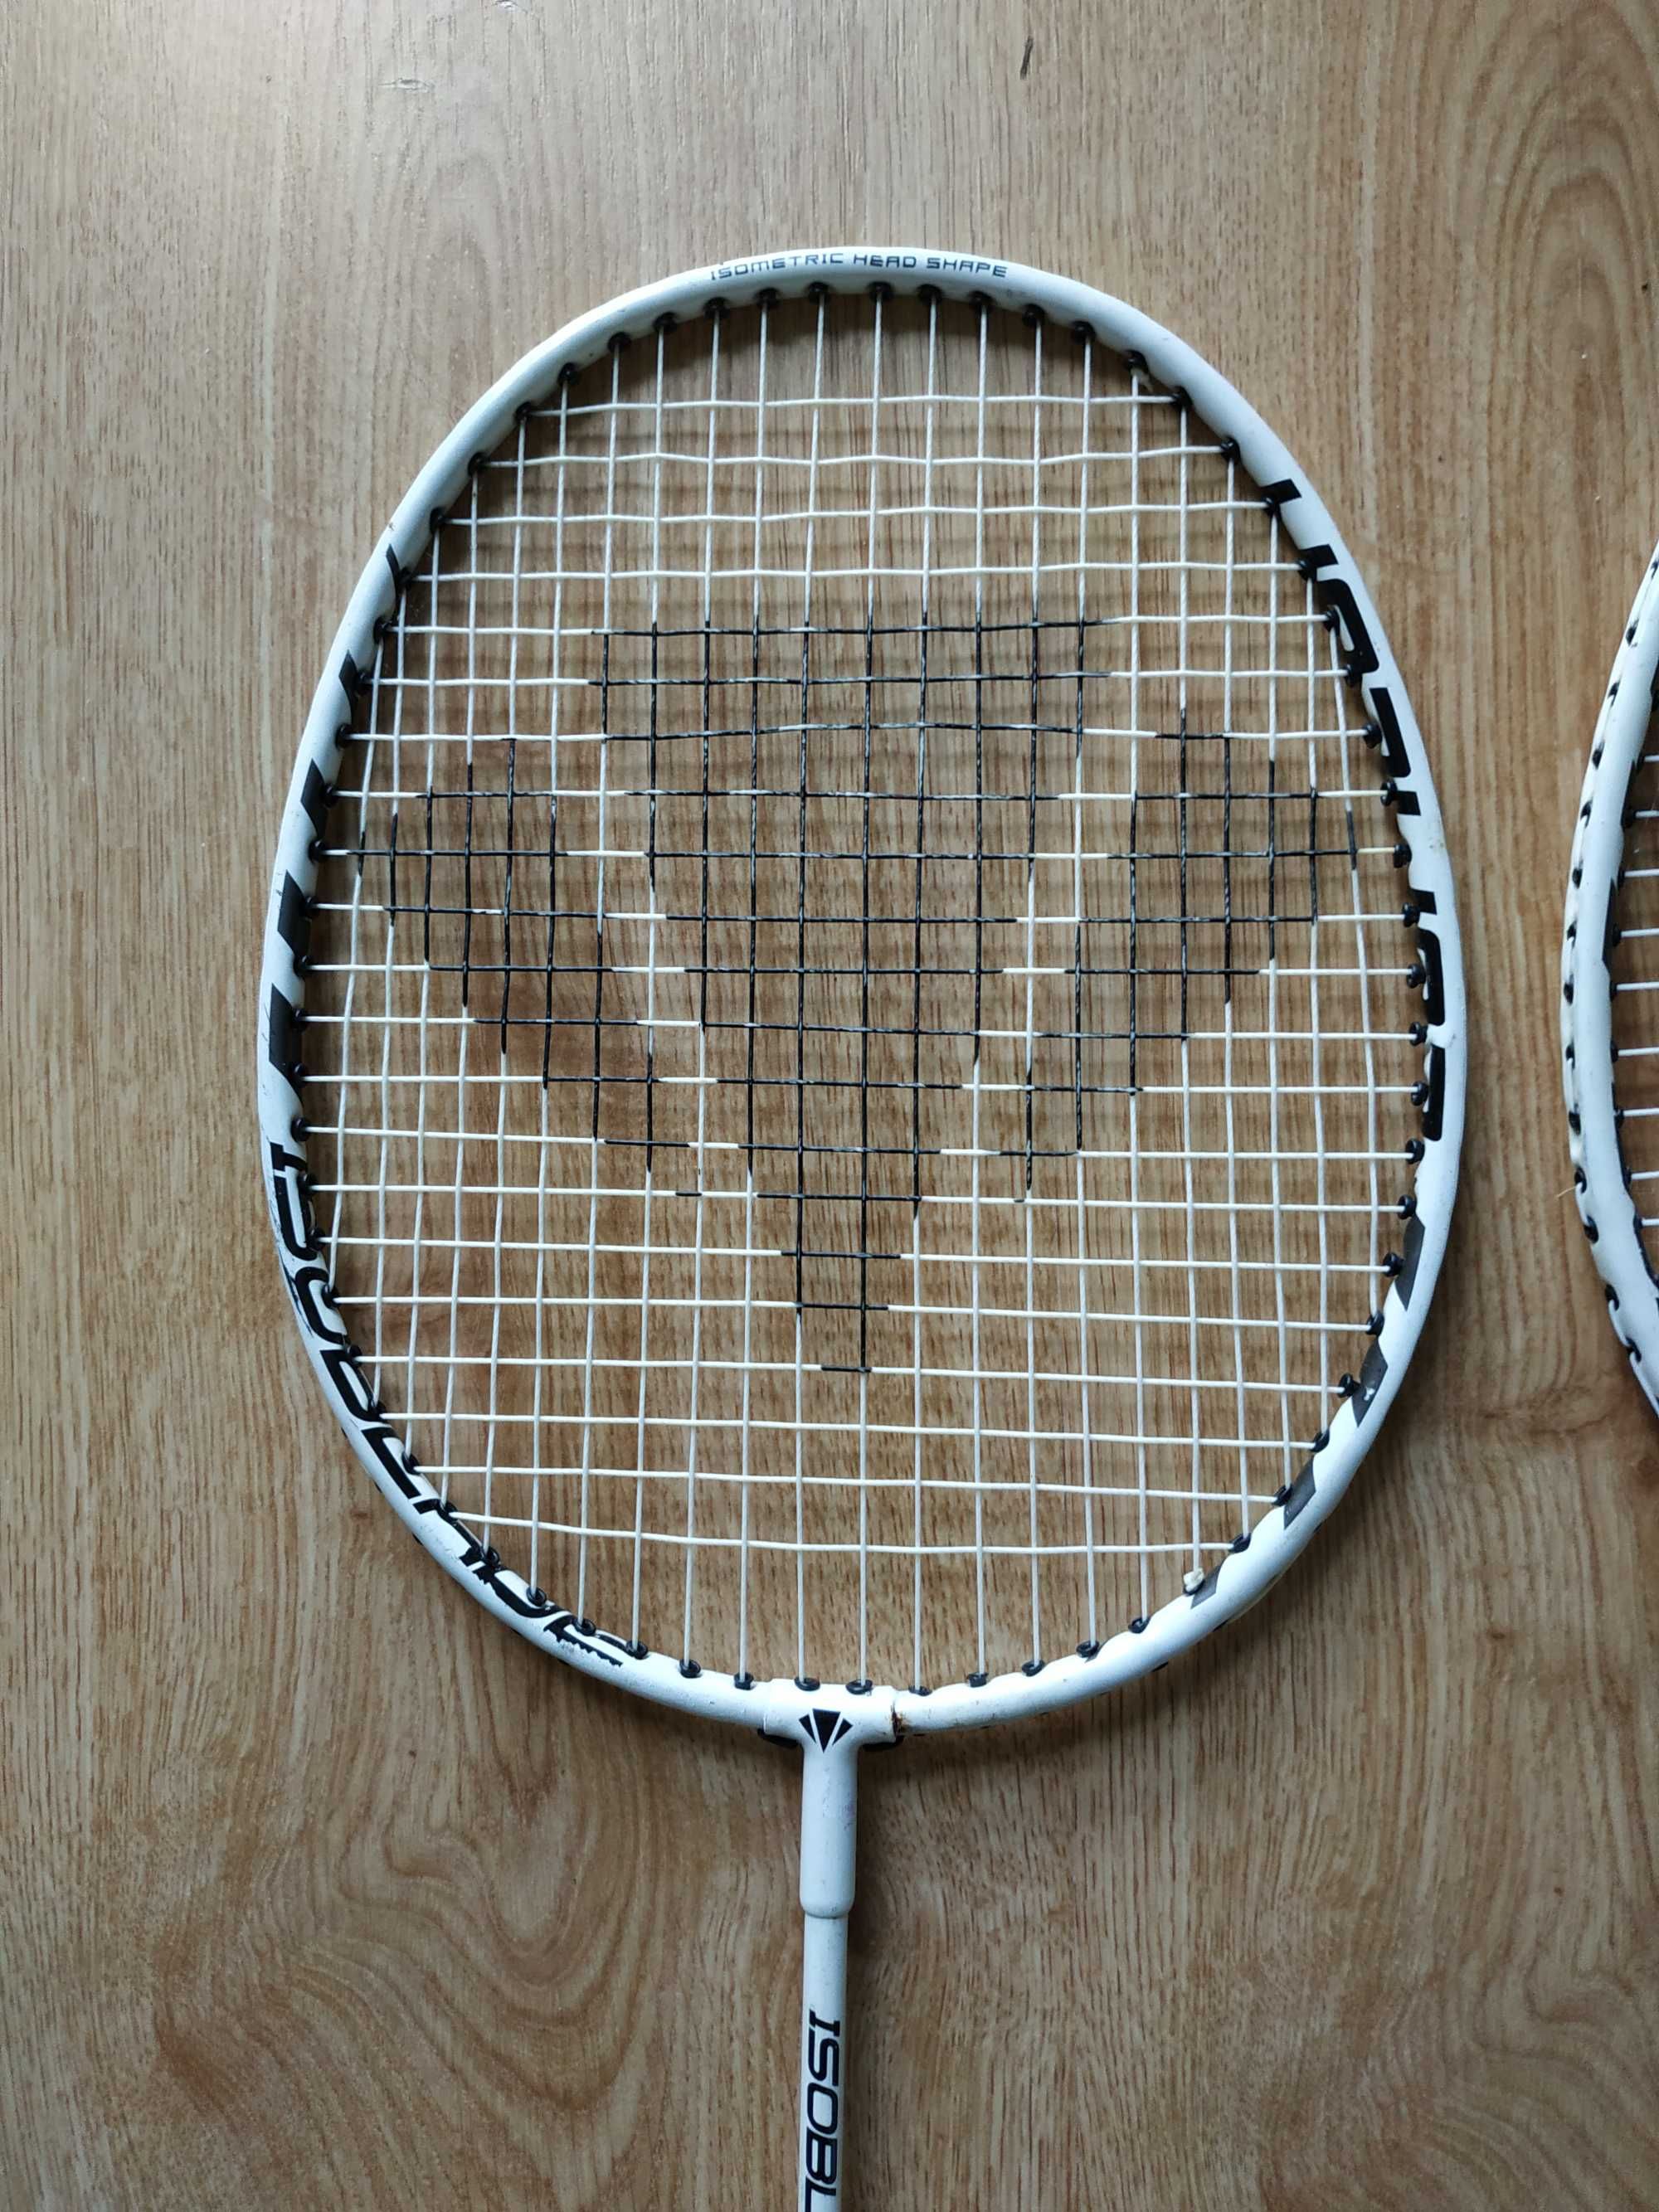 Raquetes de badminton